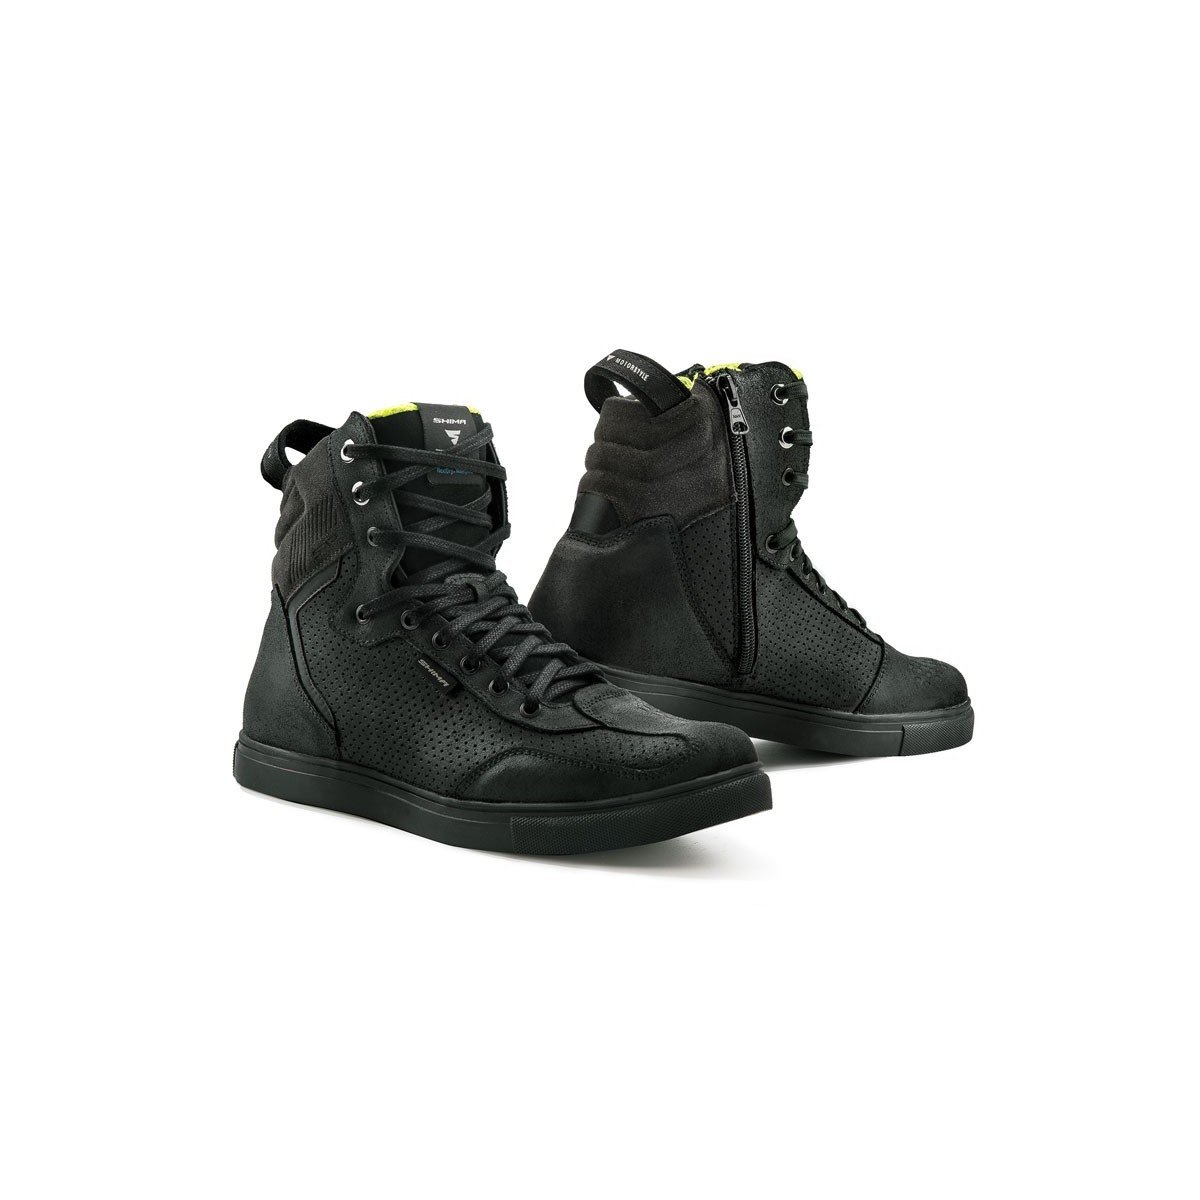 SHIMA Rebel WP, wodoszczelne buty motocyklowe Urban męskie buty do jazdy na motocyklu, sneakersy czarne (41-46, czarne), rozmiar 44